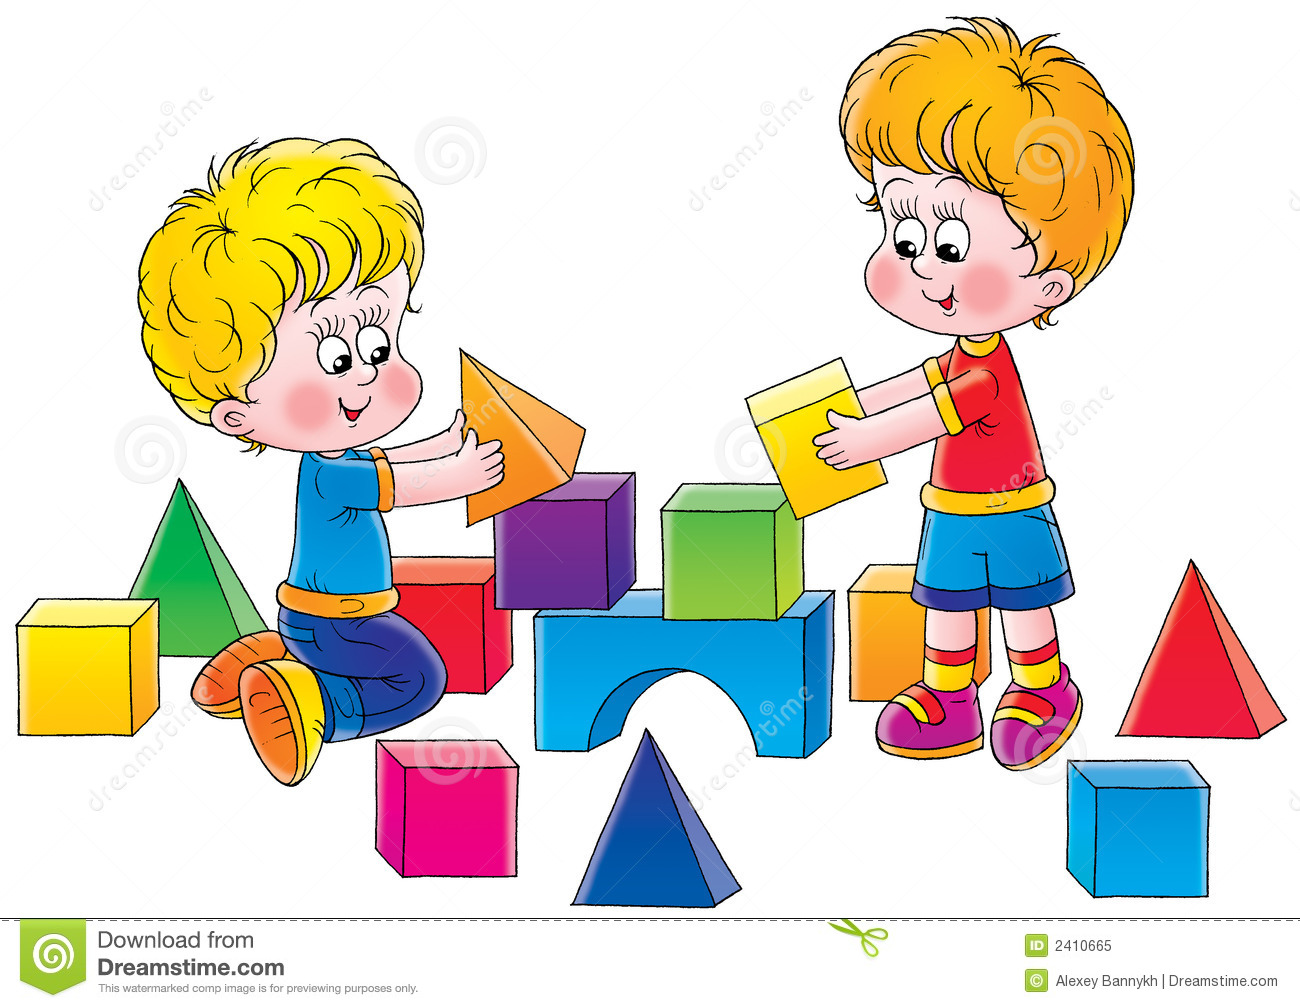 Preschool Clip Art   Imagefriend Com   Your Friend For Images 